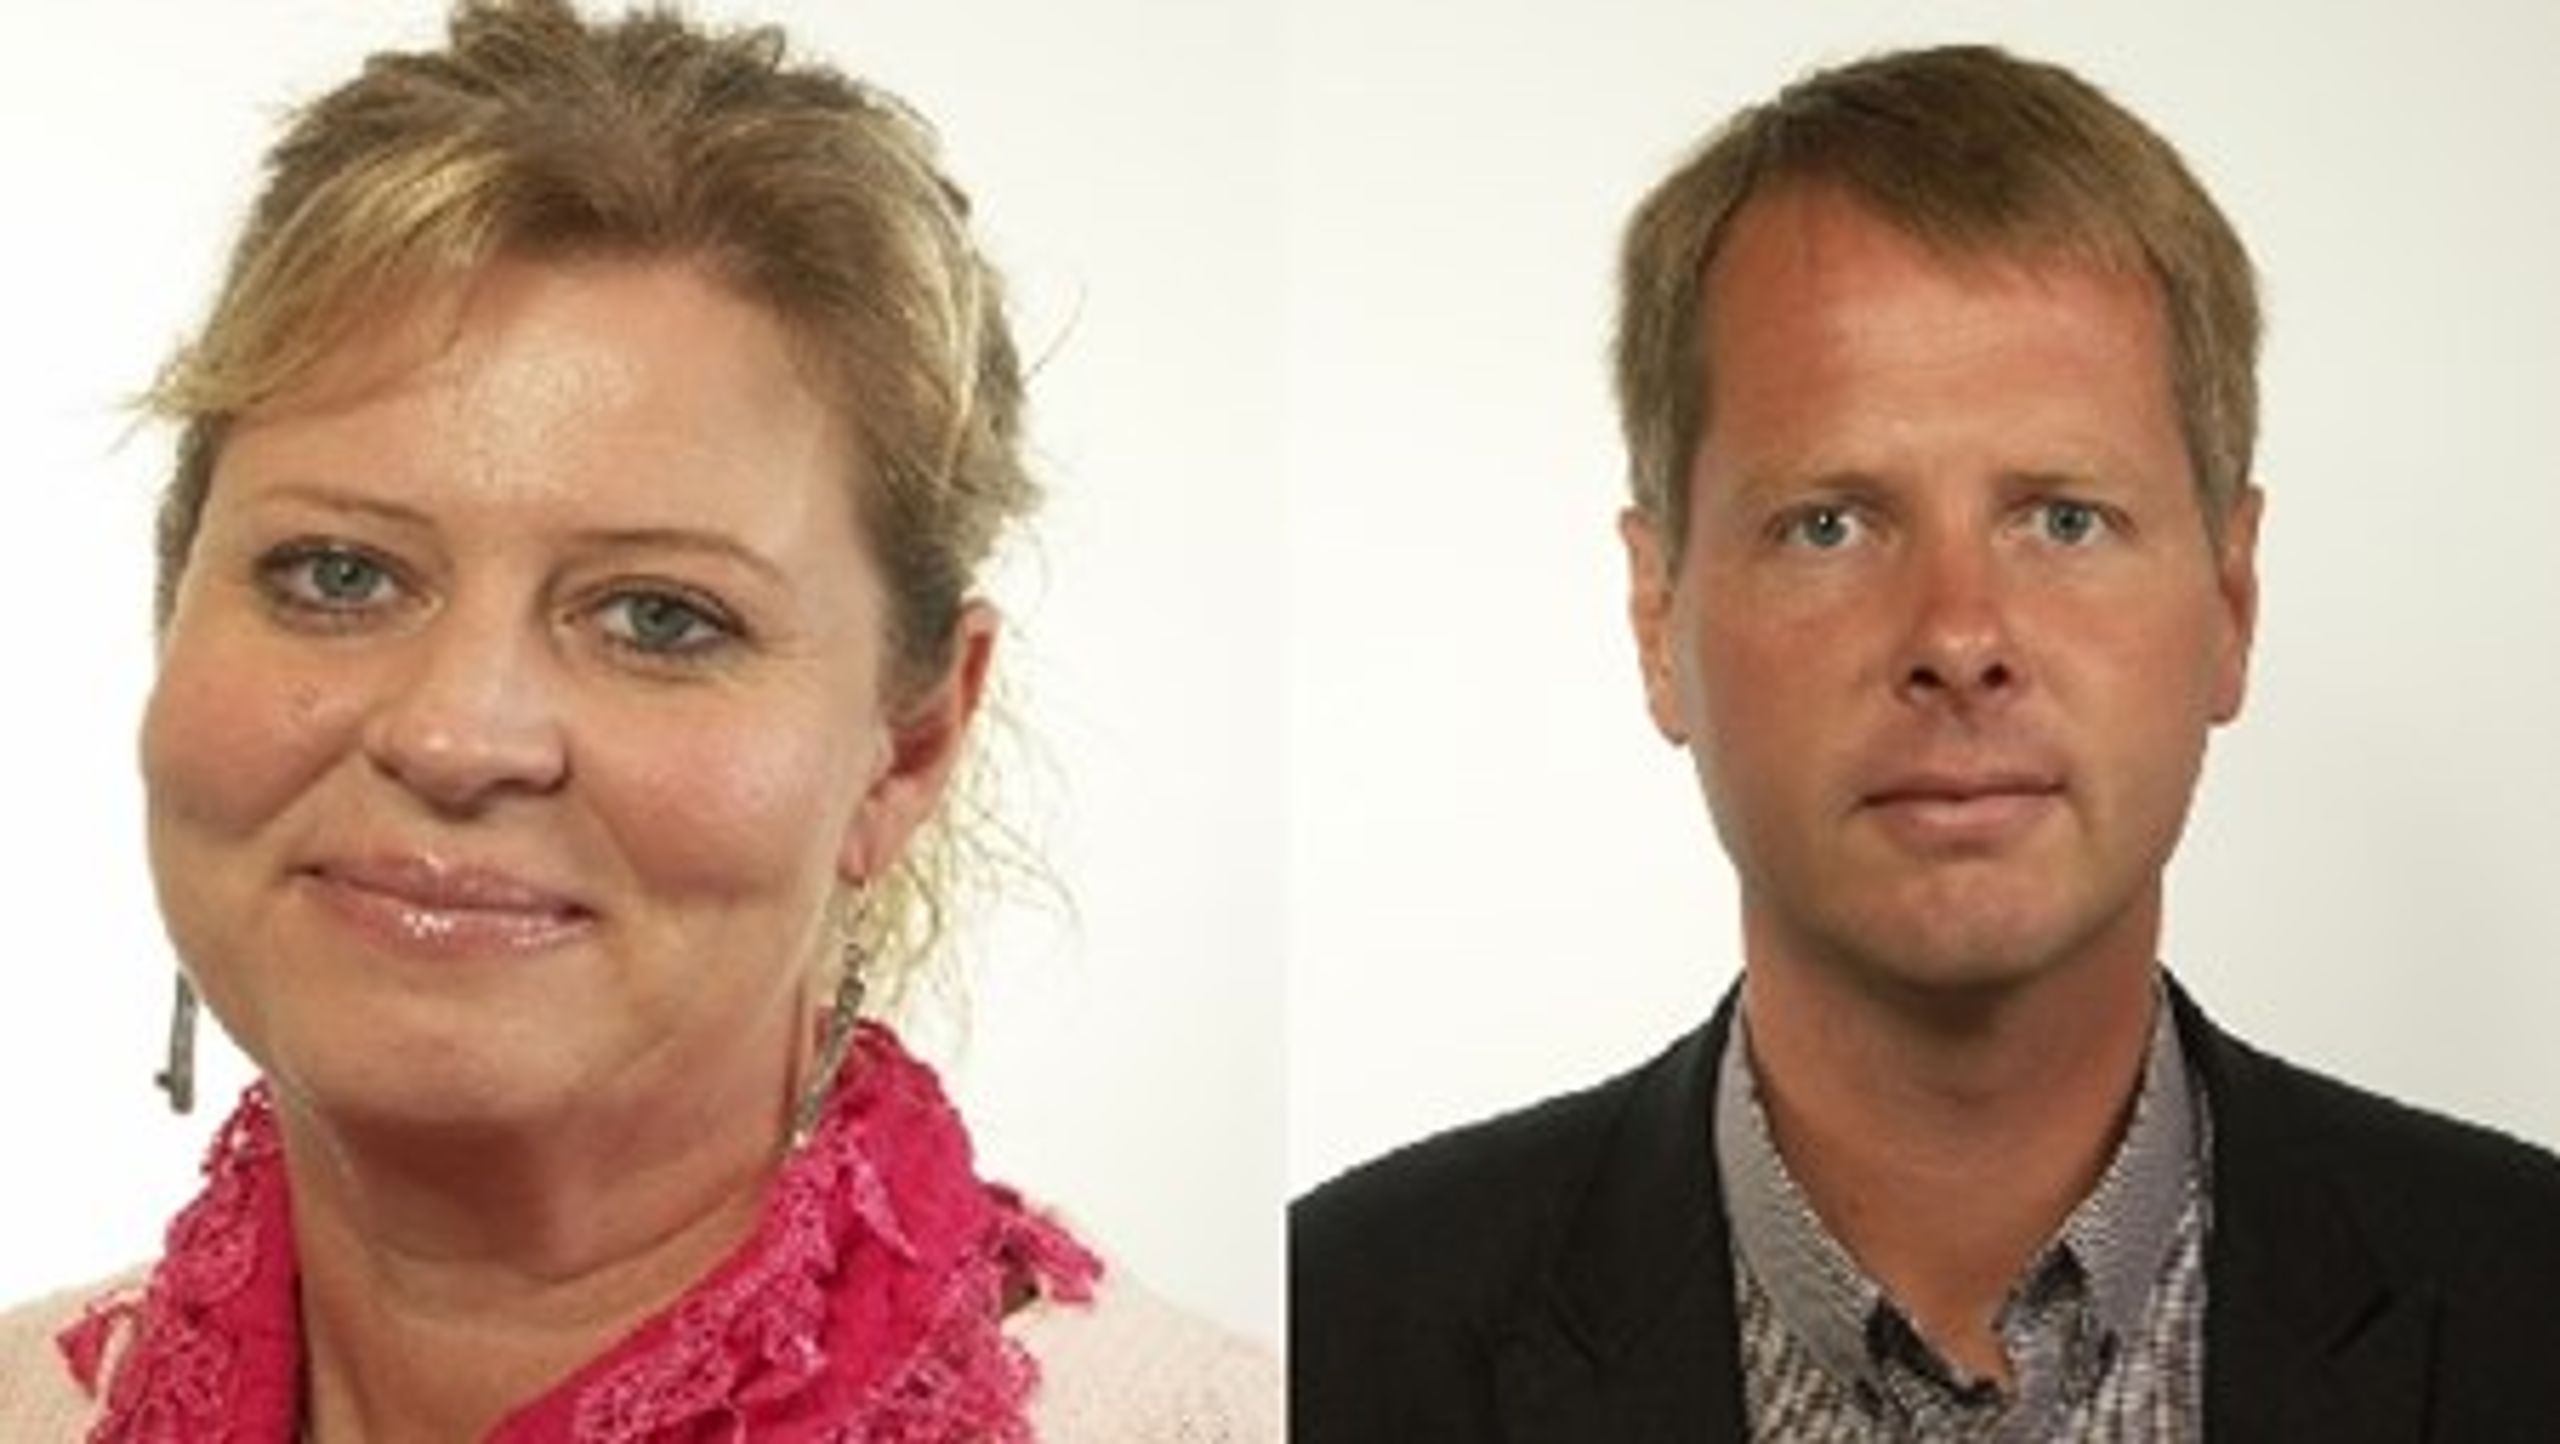 Camilla Waltersson Grönvall och Christer Nylander, utbildningspolitiska talespersoner för Moderaterna respektive Folkpartiet, kan se fram emot borgerlig skolpolitik det kommande året.